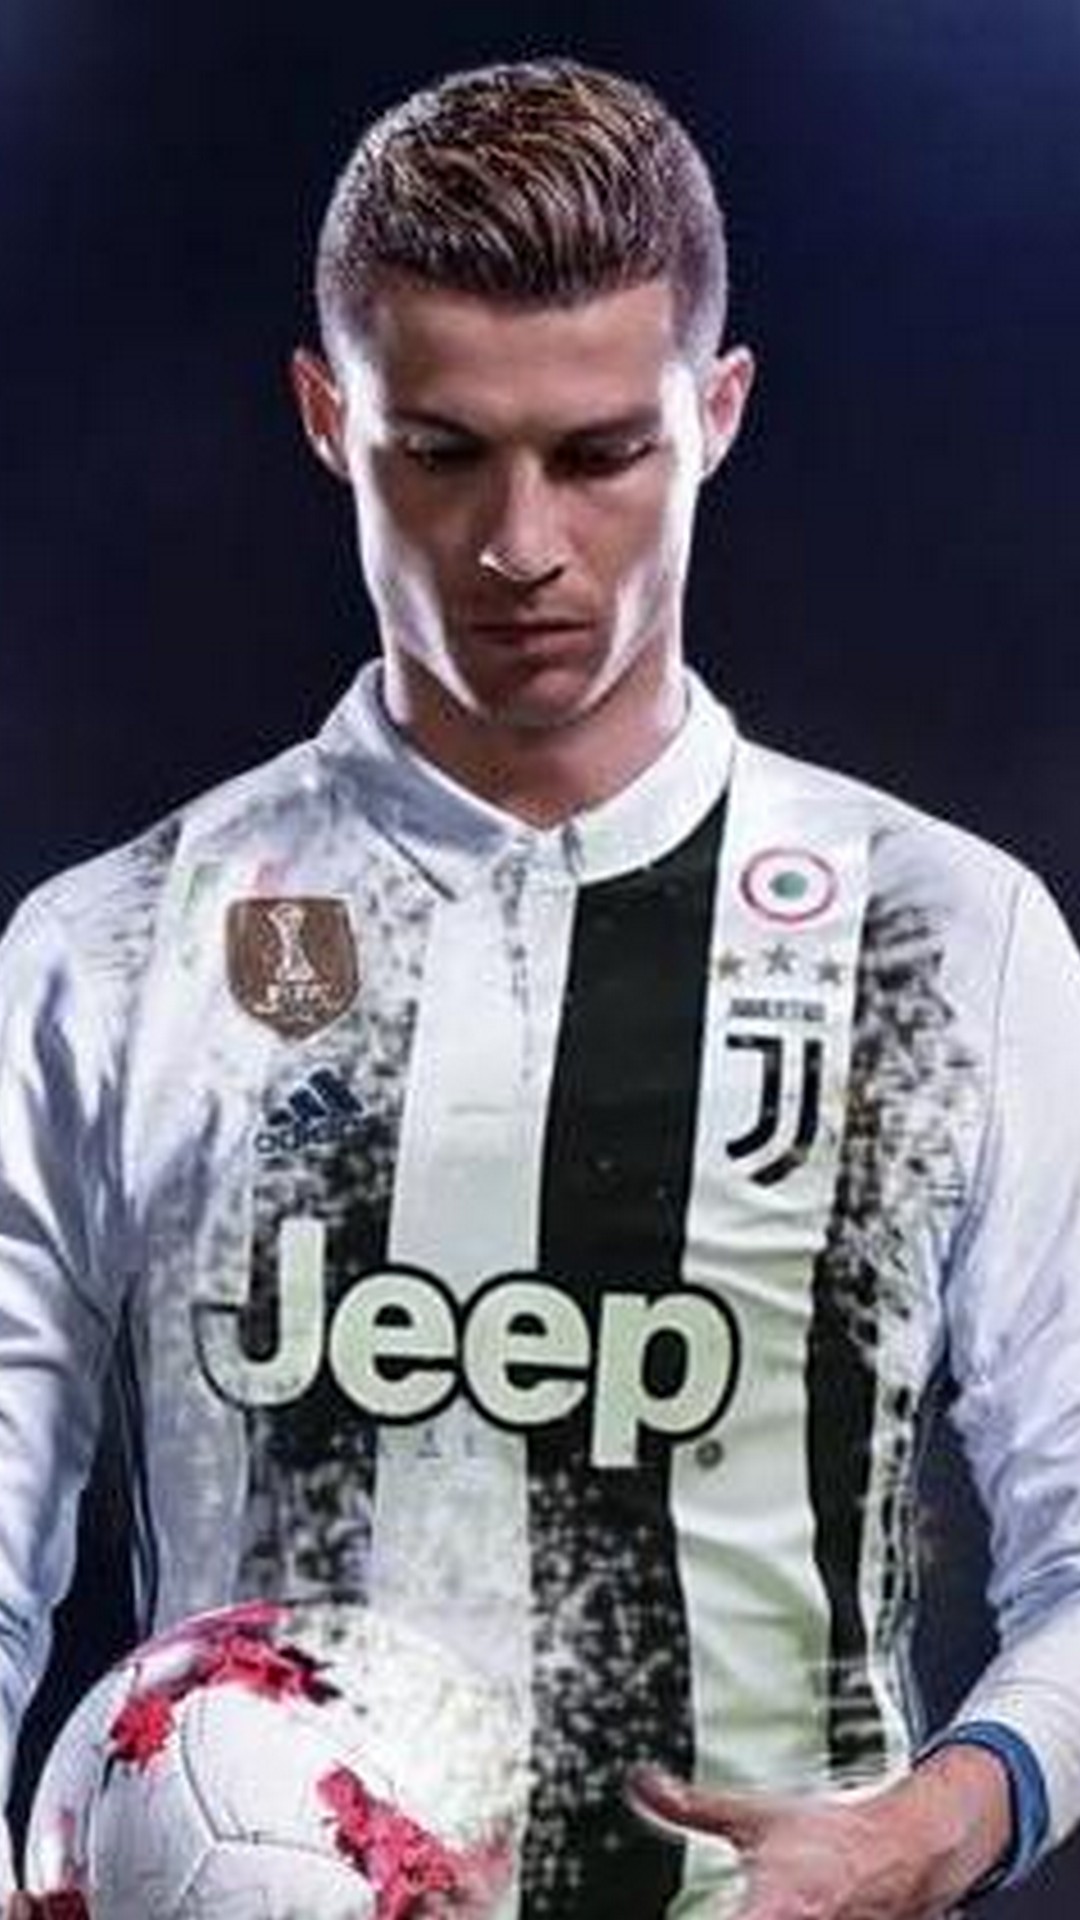 43+ Ronaldo 2020 Wallpapers on WallpaperSafari